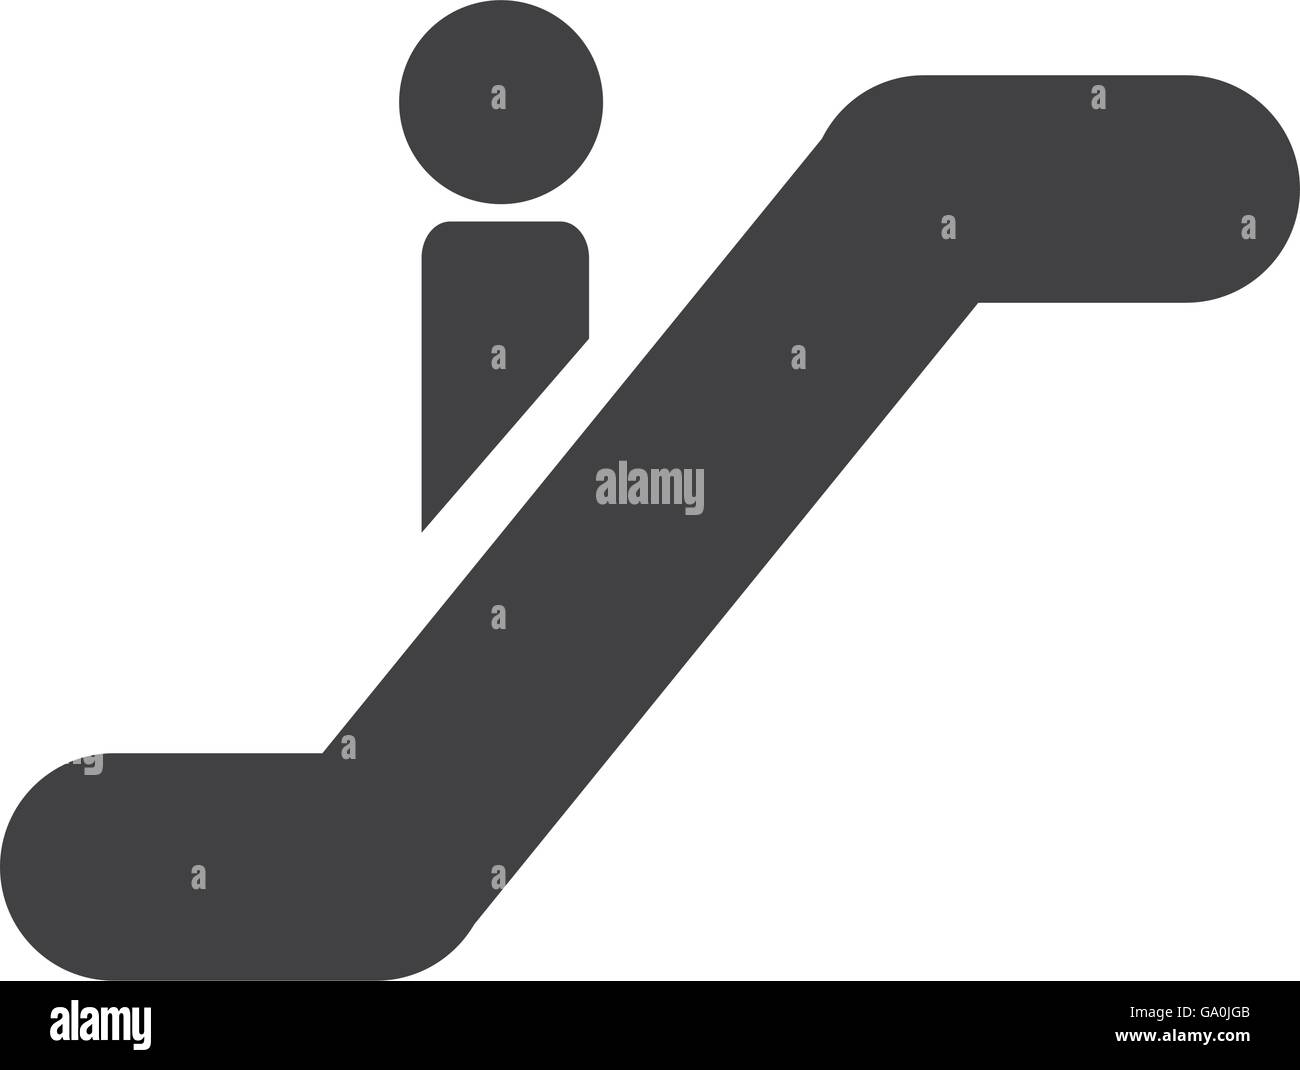 silhouette of person escalators isolated icon design Stock Vector